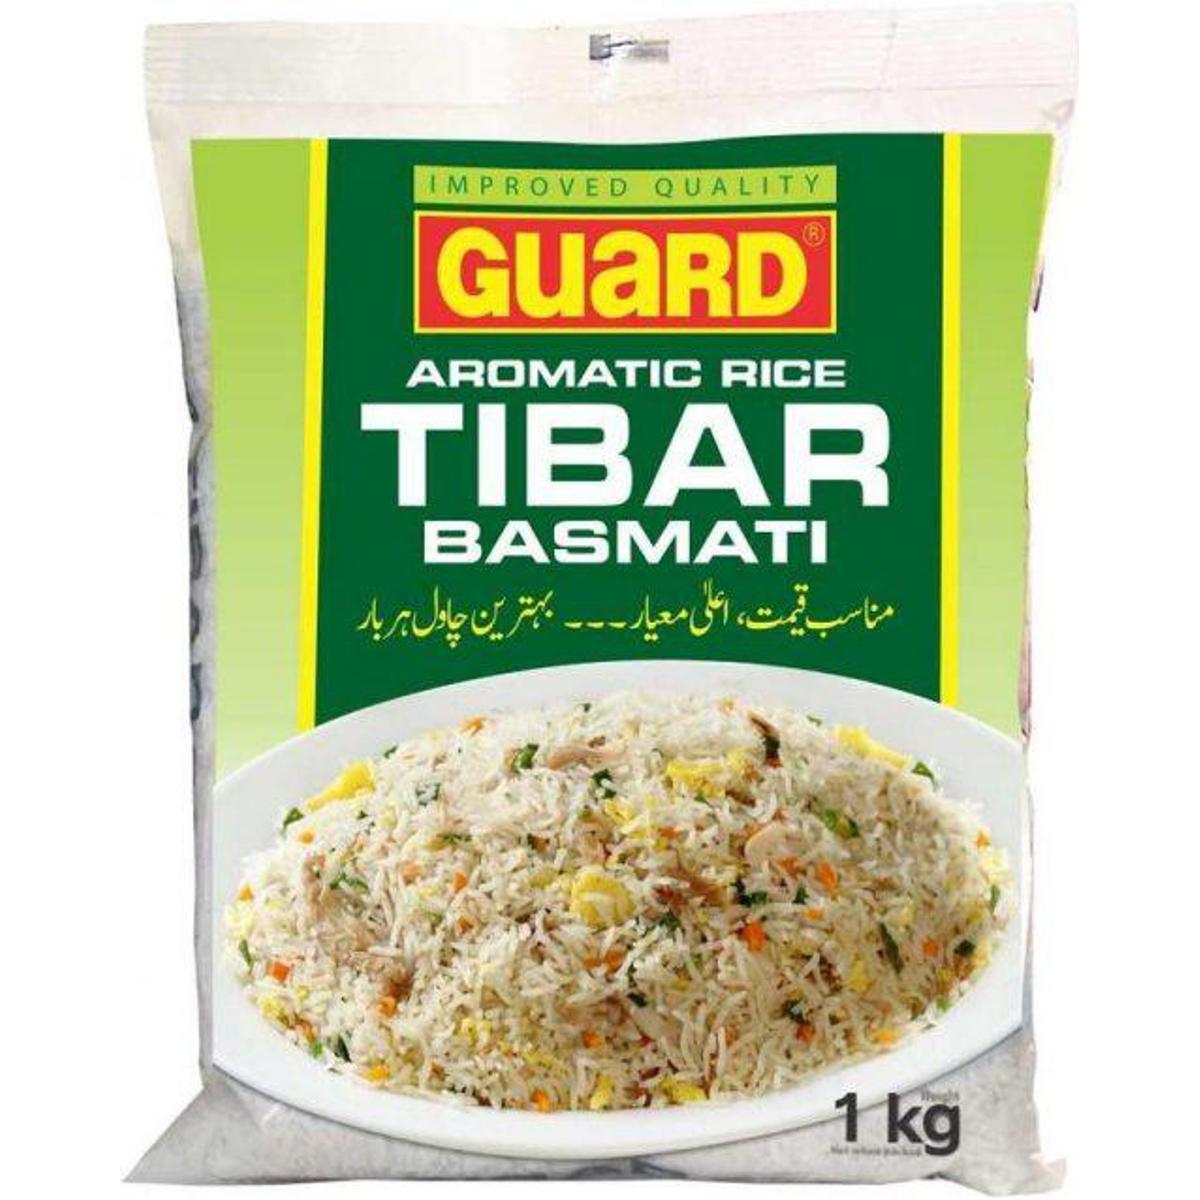 Guard Tibar Basmati Rice Chawal 1 KG Packet